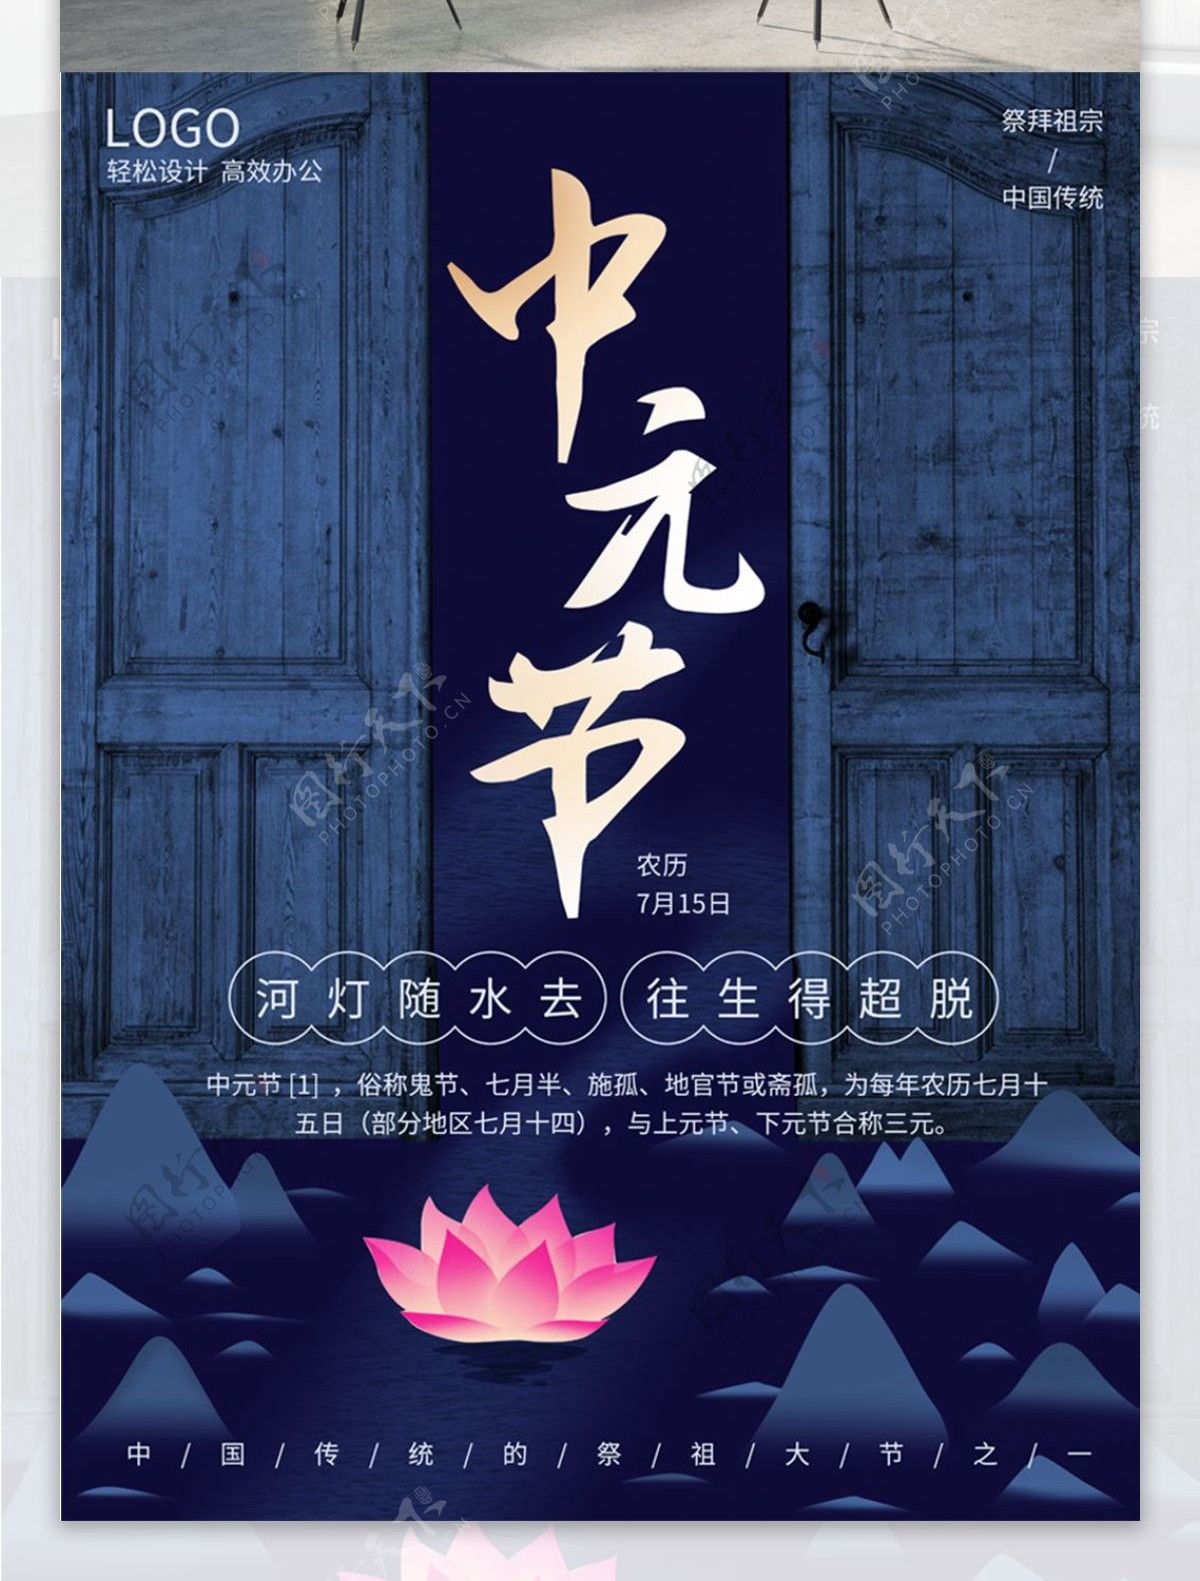 中元节节日宣传海报